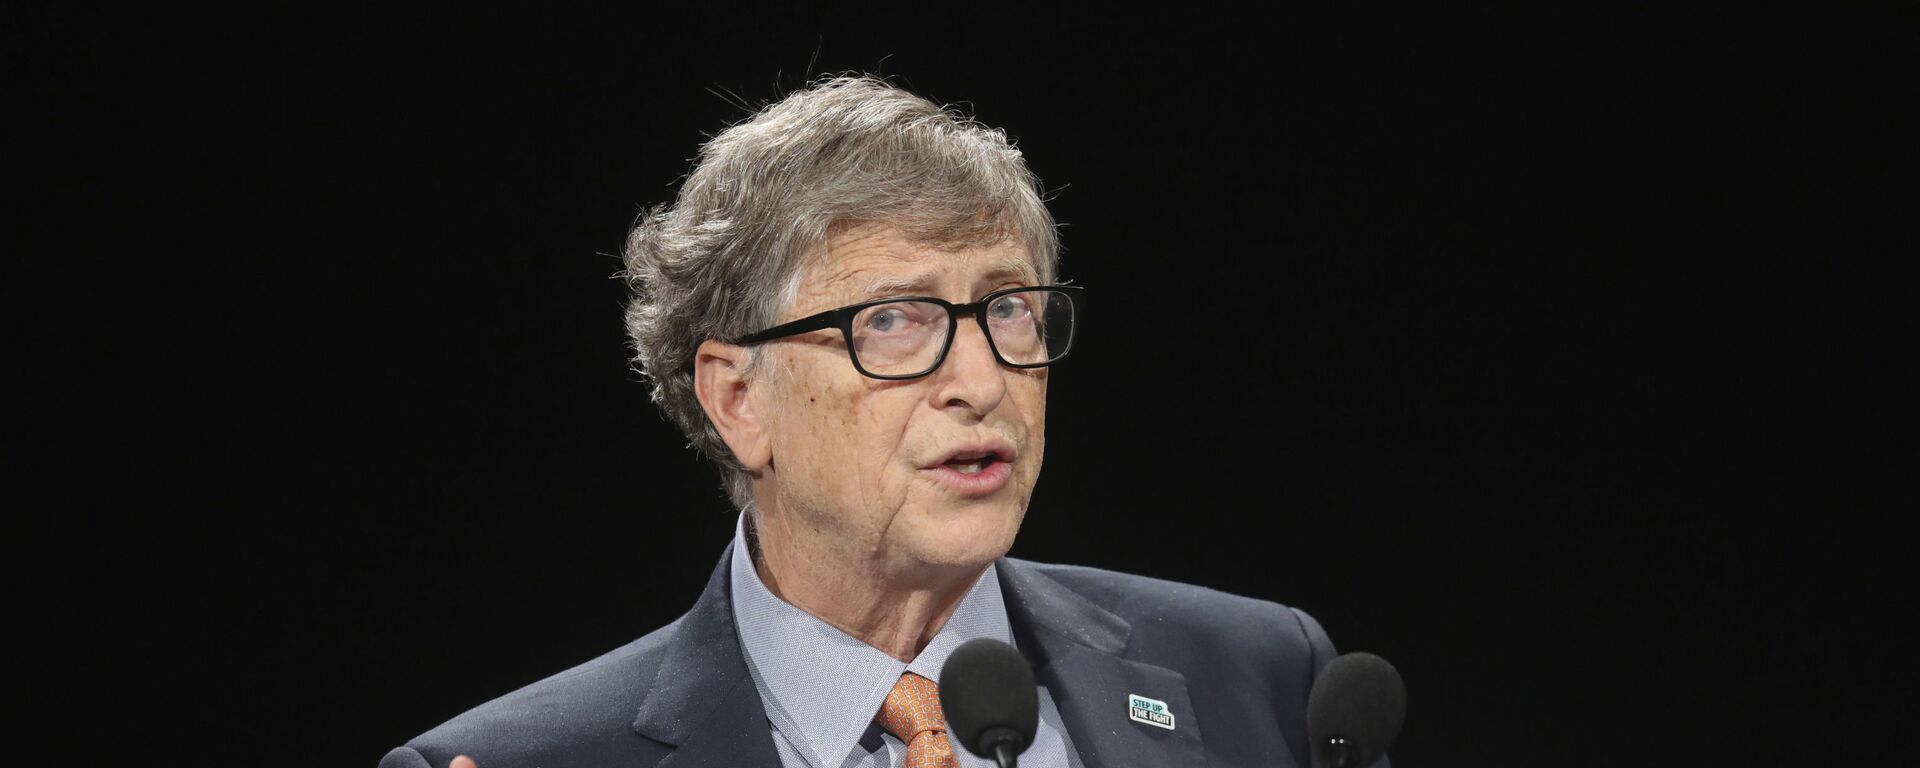 Bill Gates, multimillonario y filántropo estadounidense - Sputnik Mundo, 1920, 24.04.2021